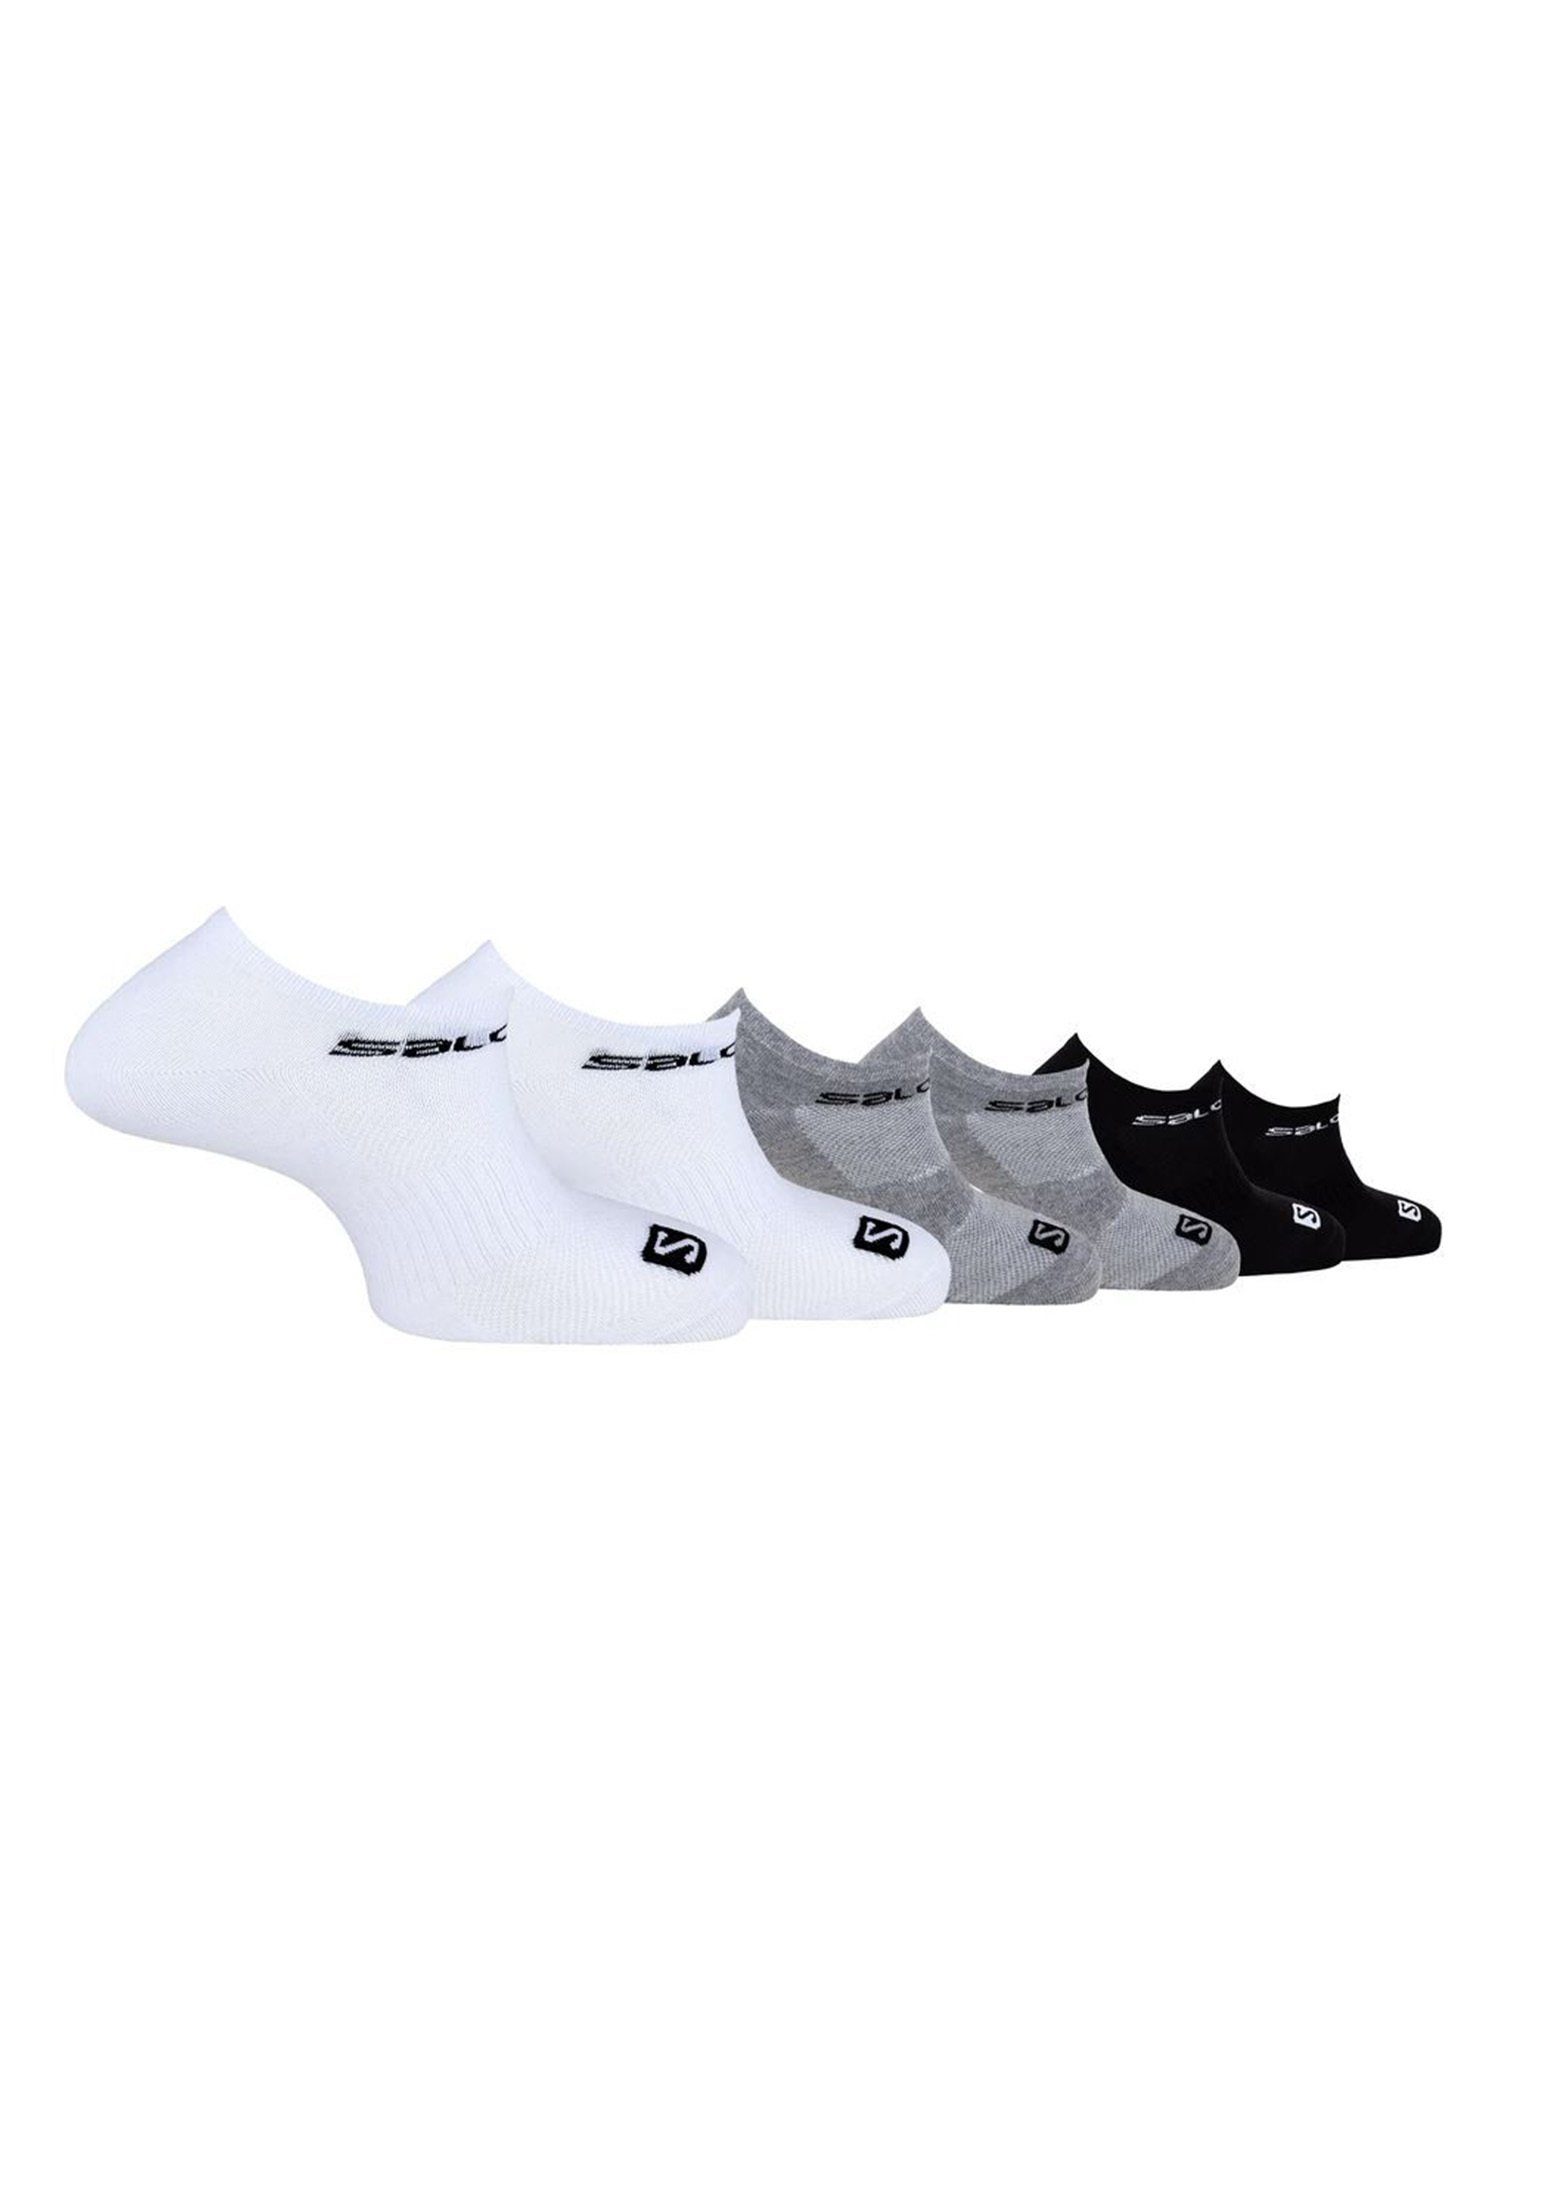 6er Salomon Sportsocken Sportsocken Pack black/white/grey